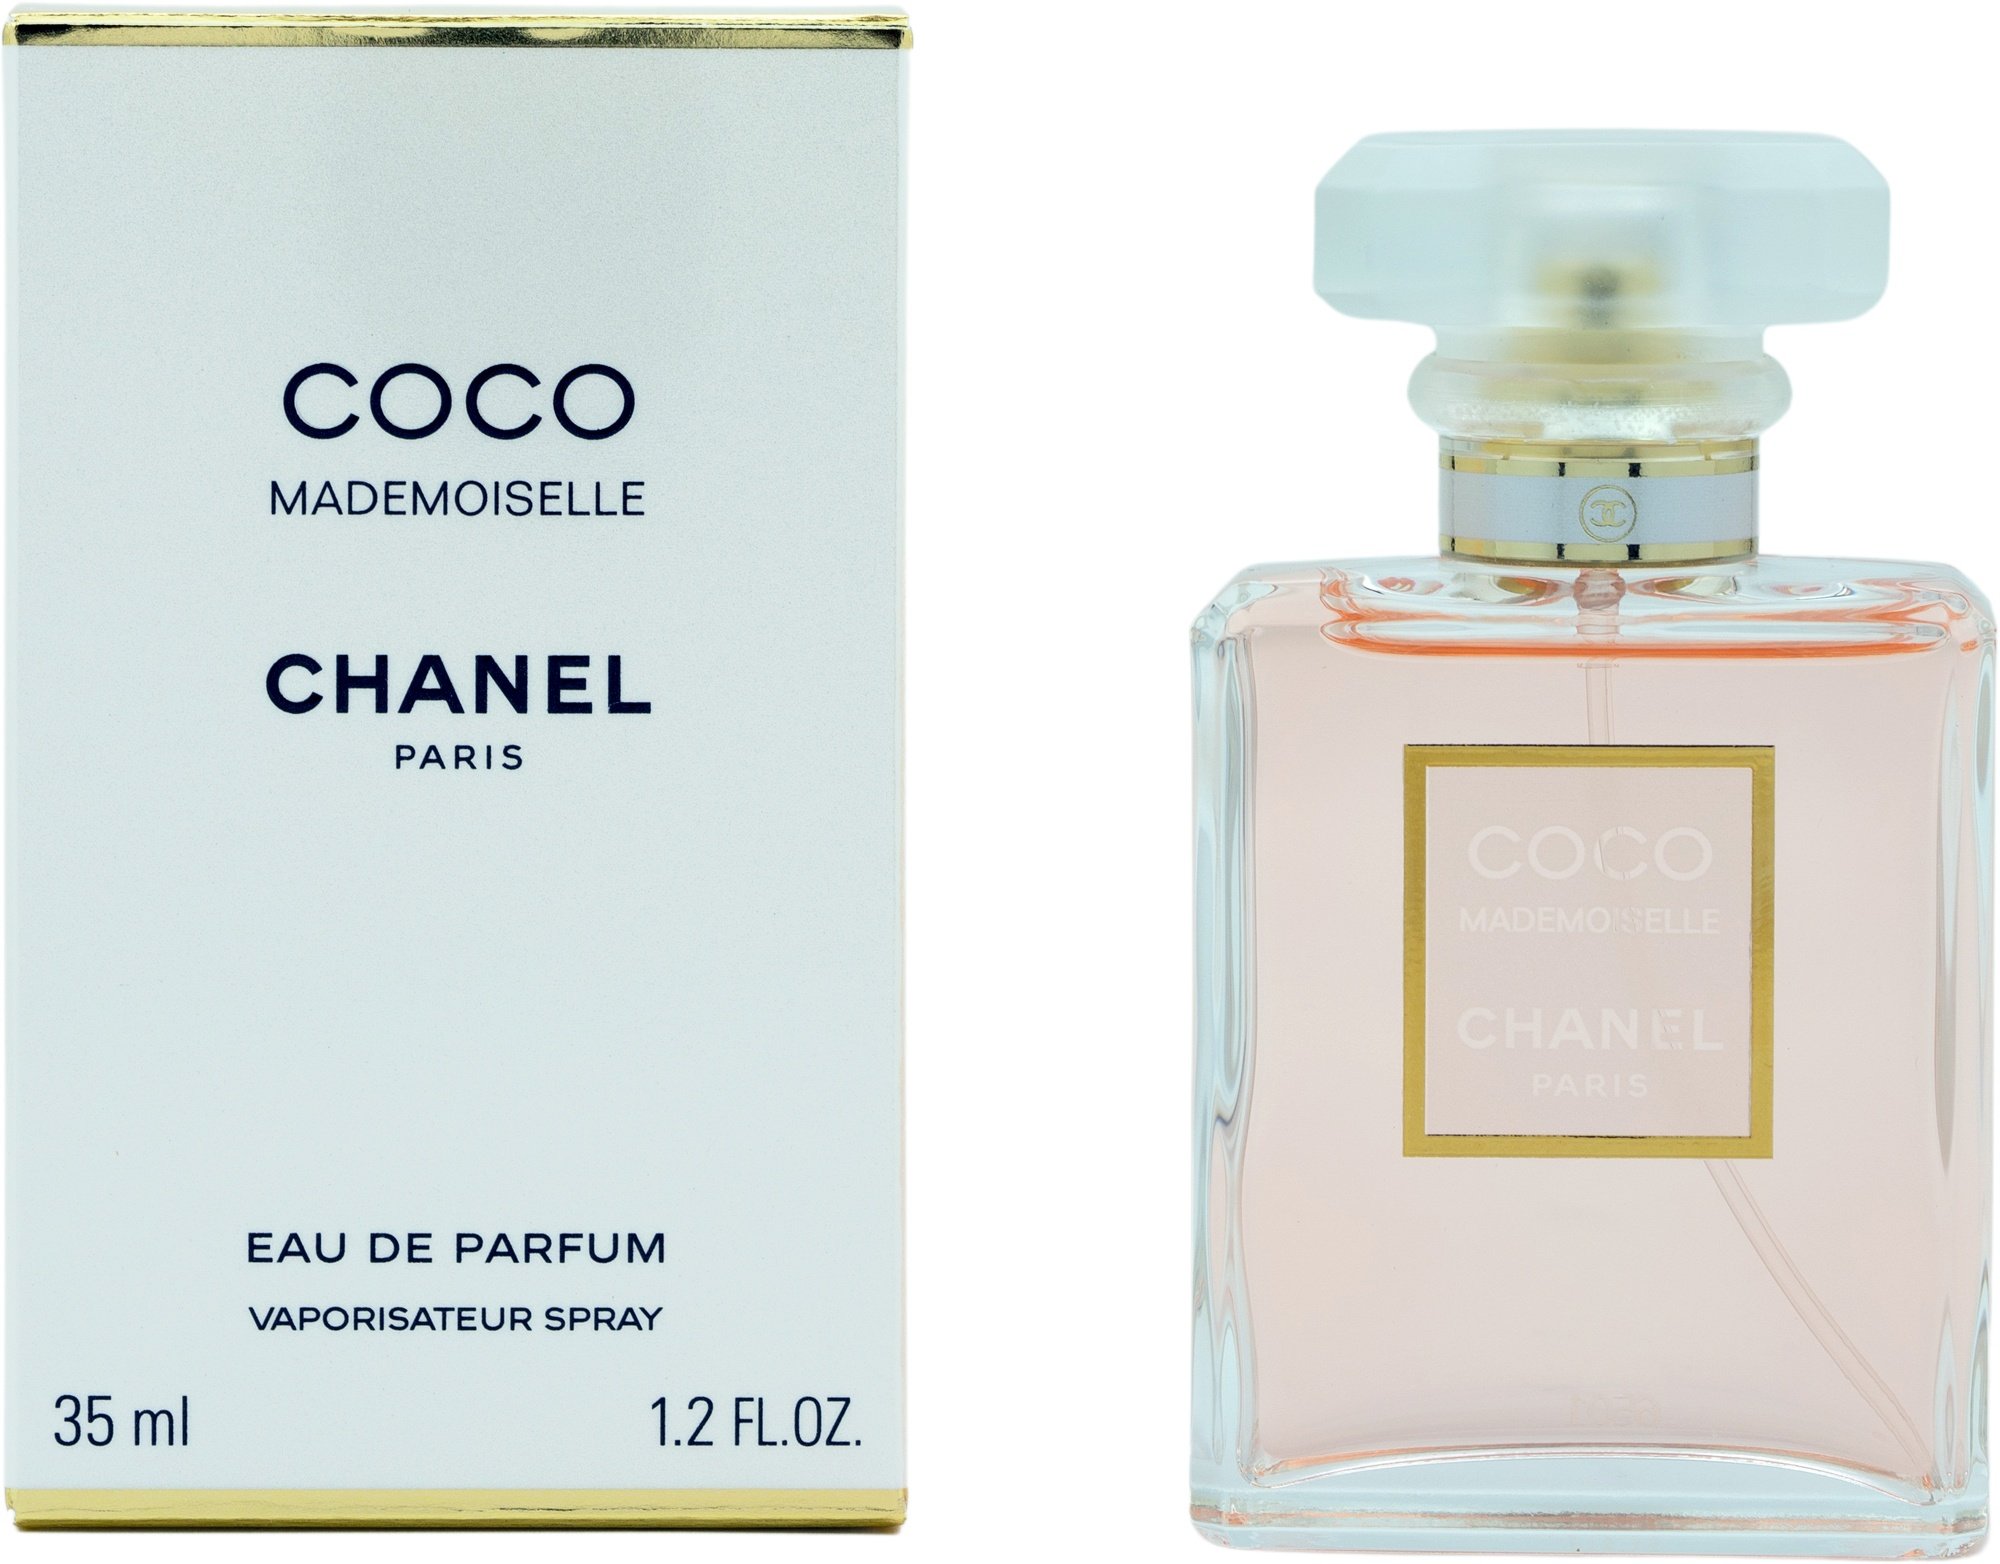 Nước hoa Chanel Coco Mademoiselle Eau de Parfum  7thkingdom